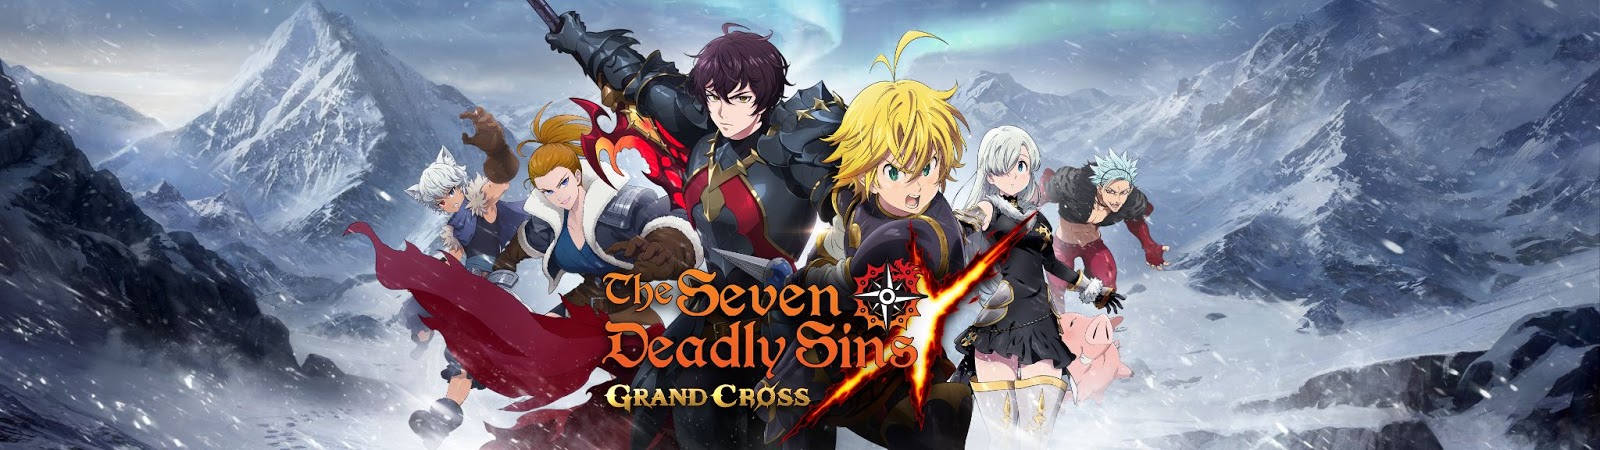 The Seven Deadly Sins: Grand Cross 2. Jubiläum Teil 2 erklärt